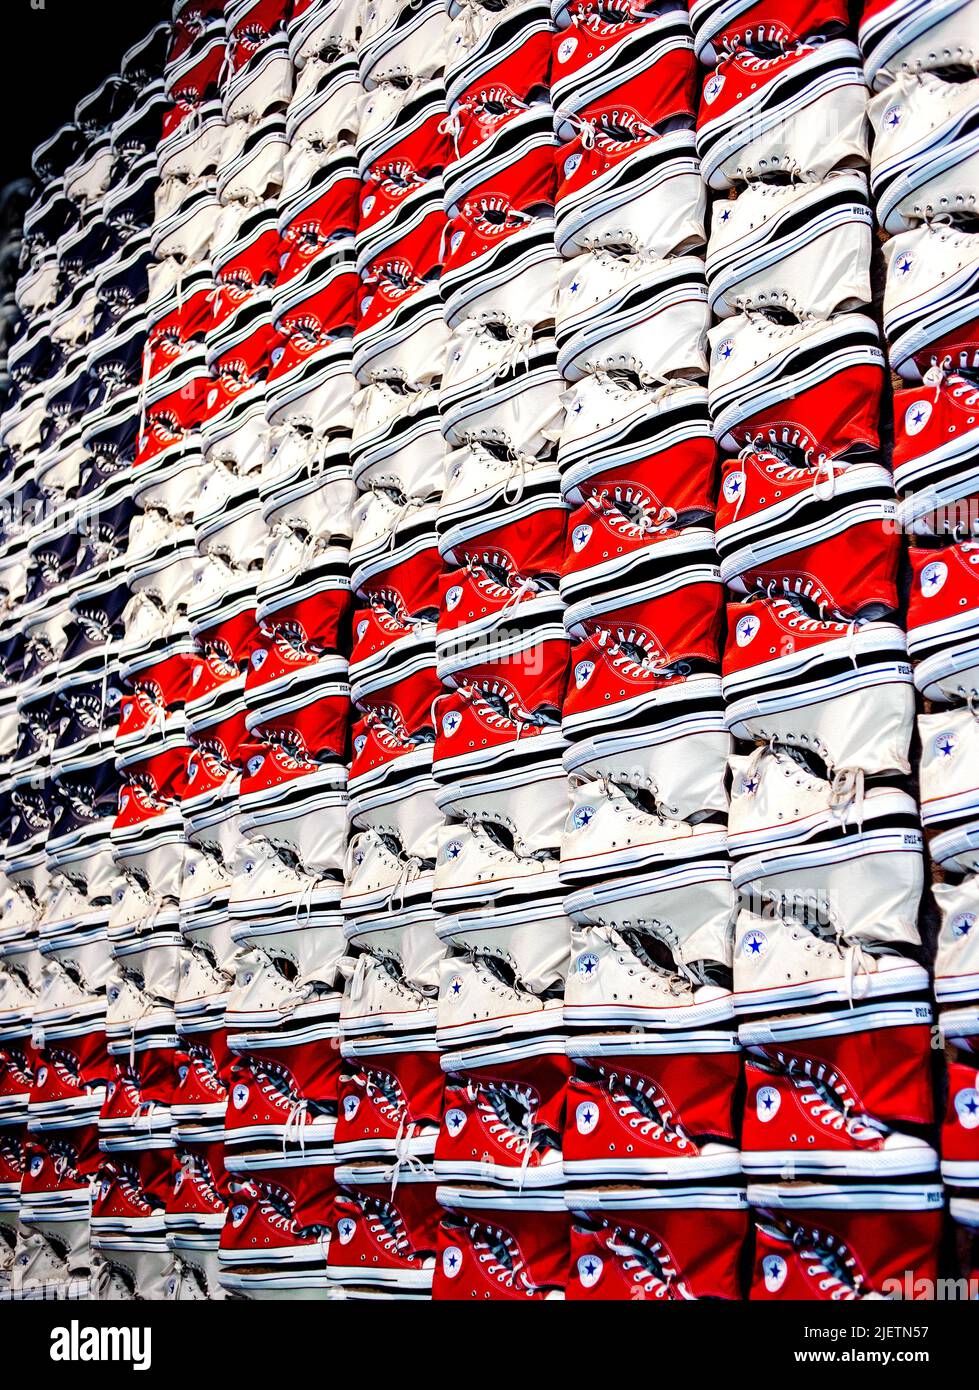 Les chaussures Converse All-Star Chuck Taylor rouges blanches et bleues forment un drapeau américain Banque D'Images